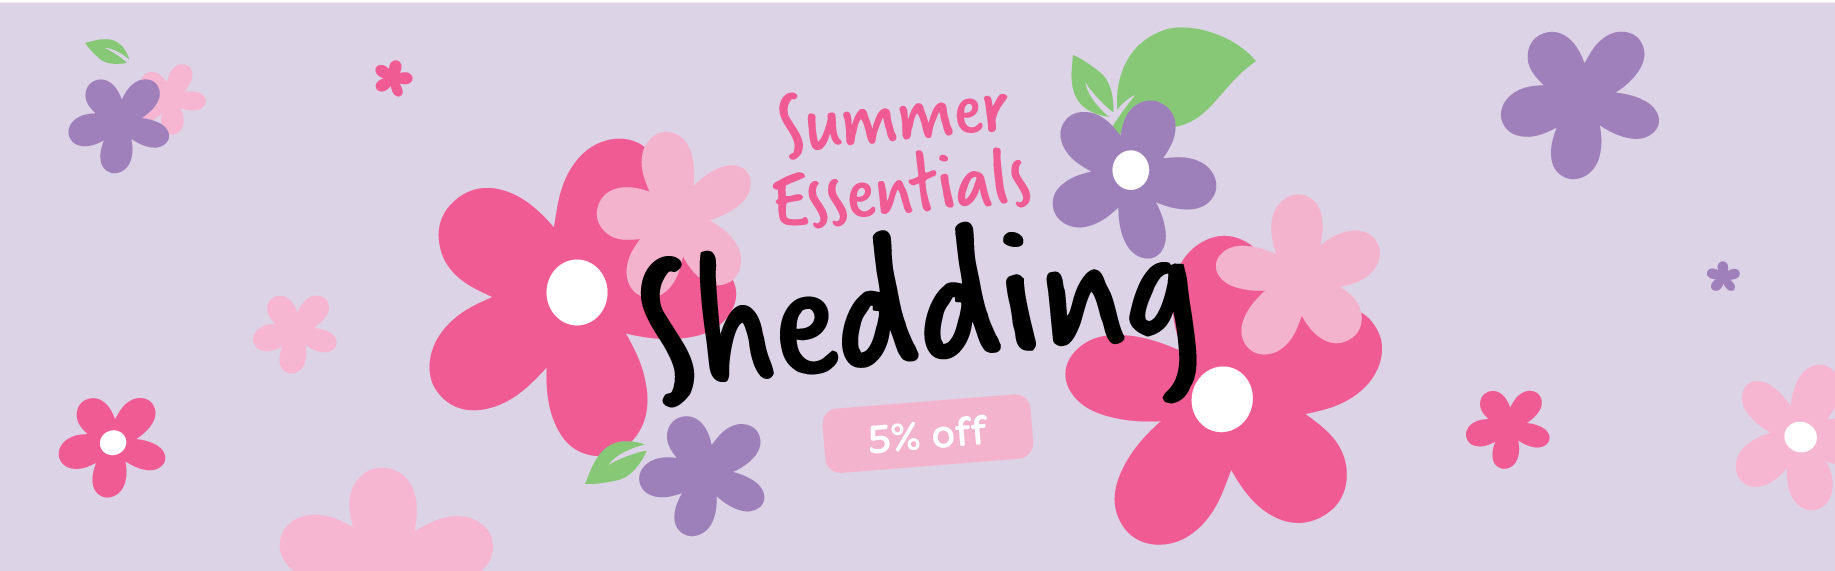 Shedding Essentials Blog Banner